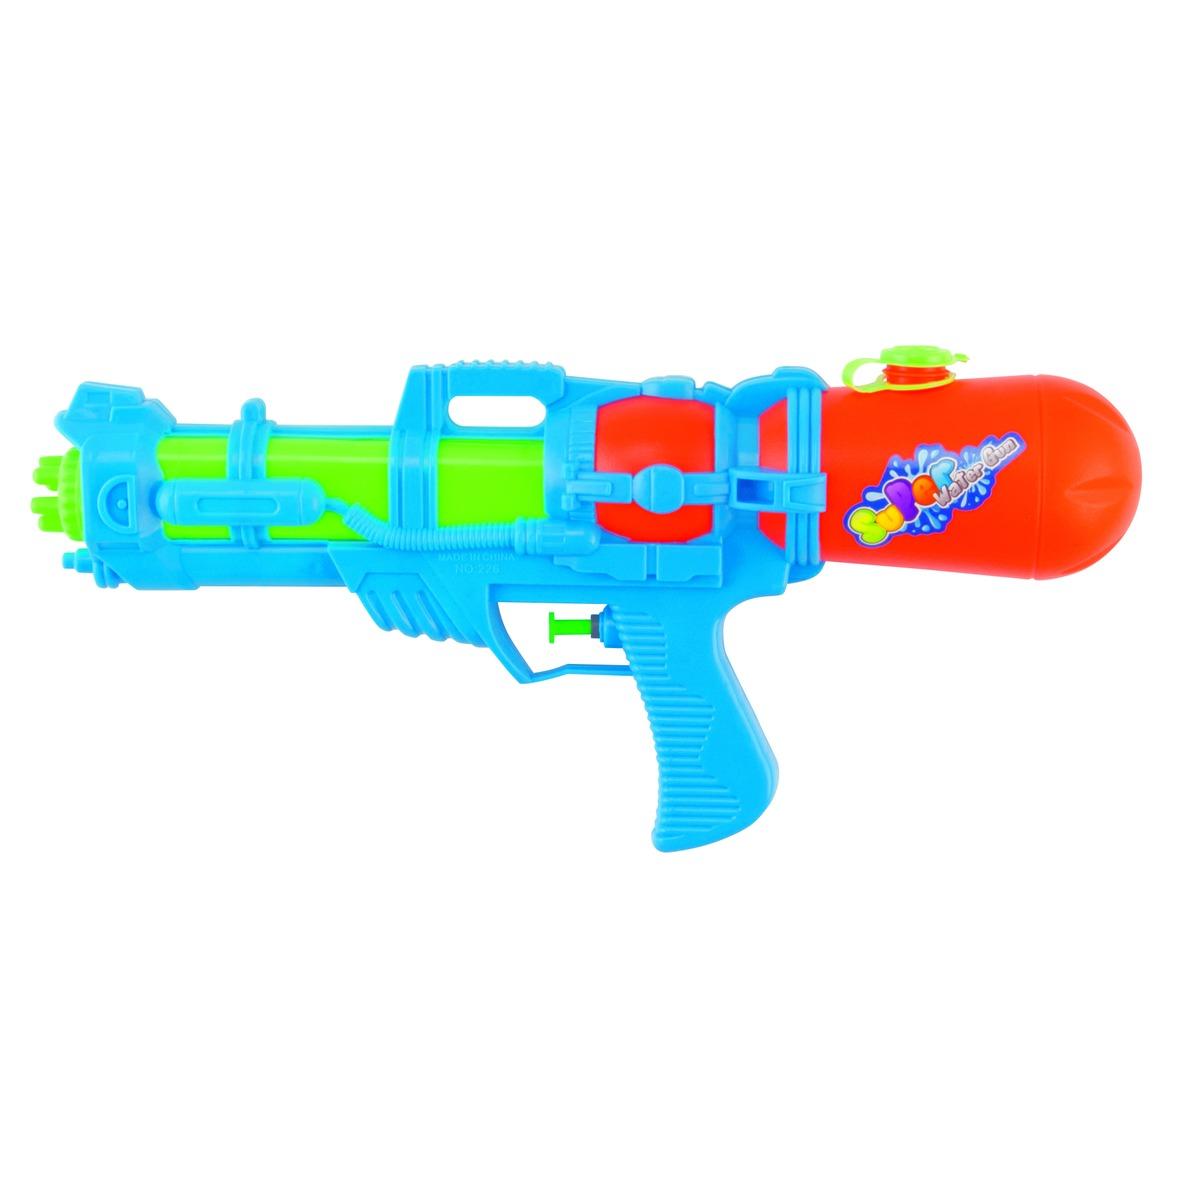 Fusil à eau - 38 cm - Multicolore